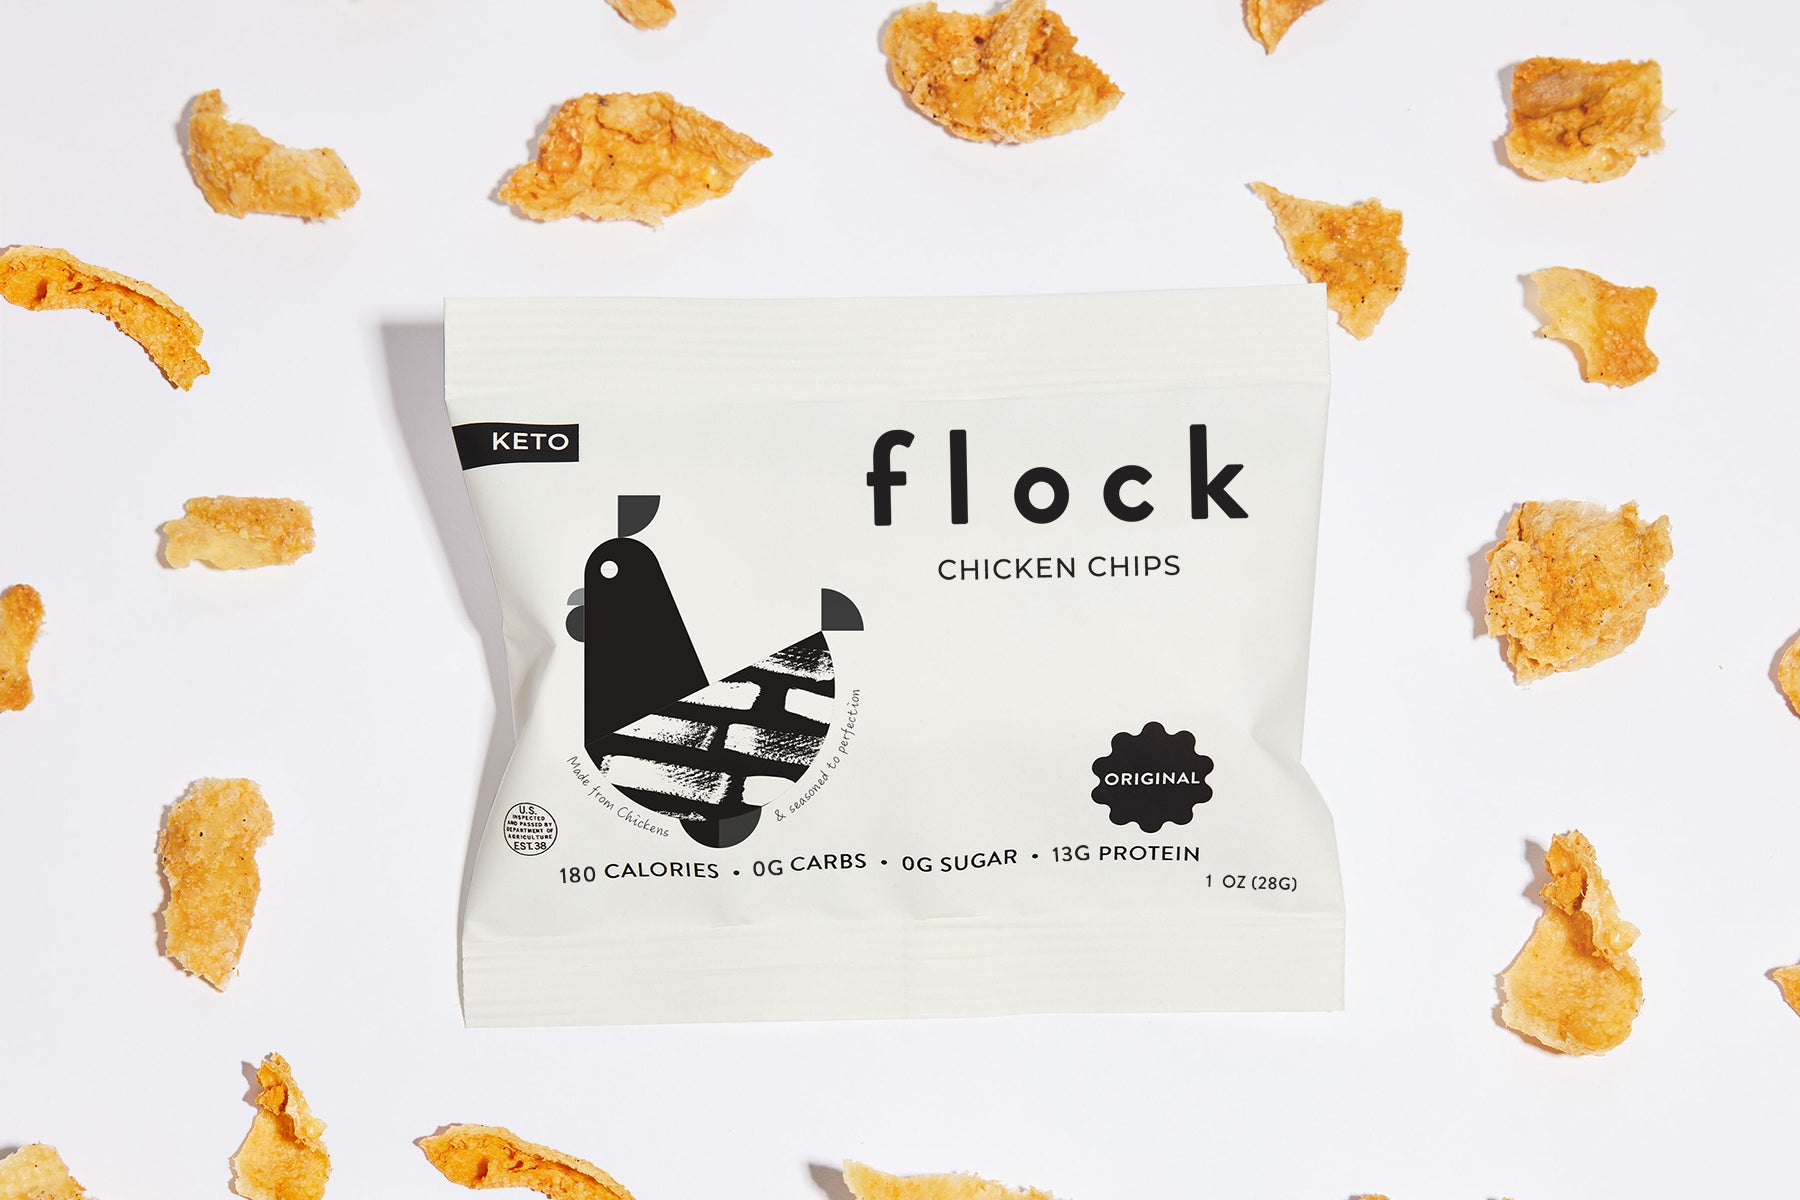  Flock Keto Chicken Skin Chips, Original Flavor, Low Carb,  High Protein, Sugar Free, Gluten Free Fried Chicken Skins - Chicken Chips  for People